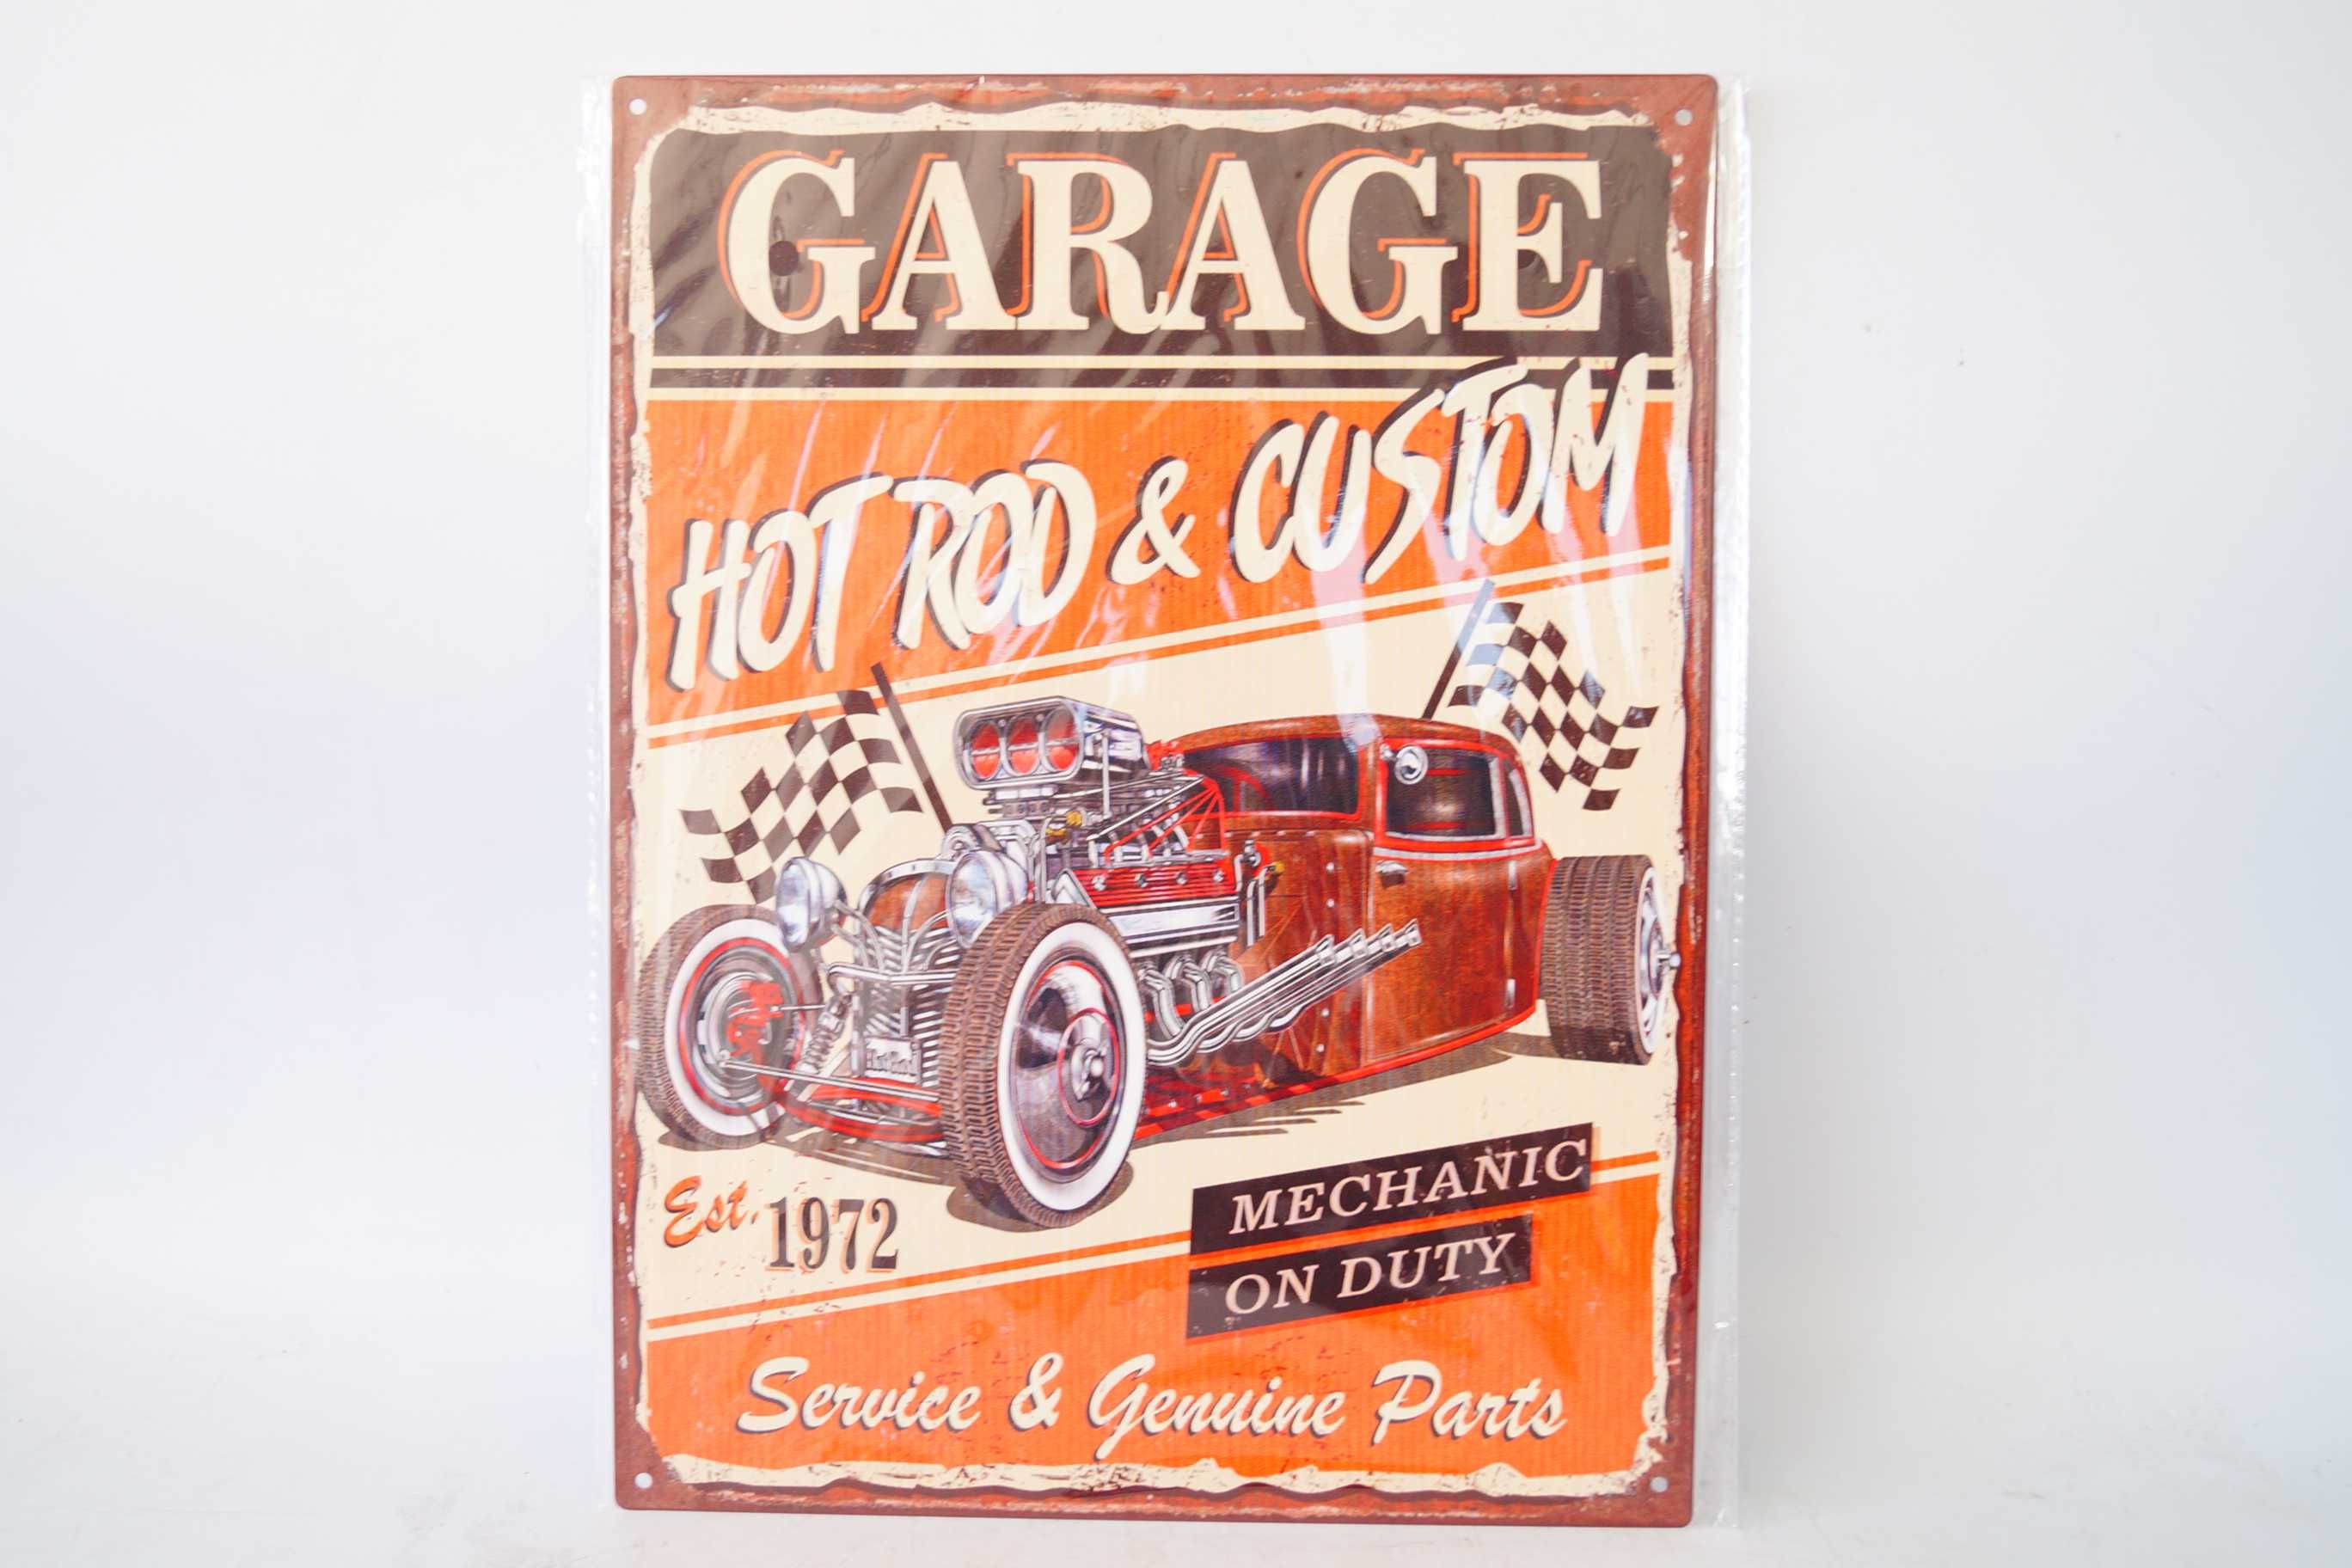 Plakat szyld metalowy 33/25 cm Garage Hot Rod